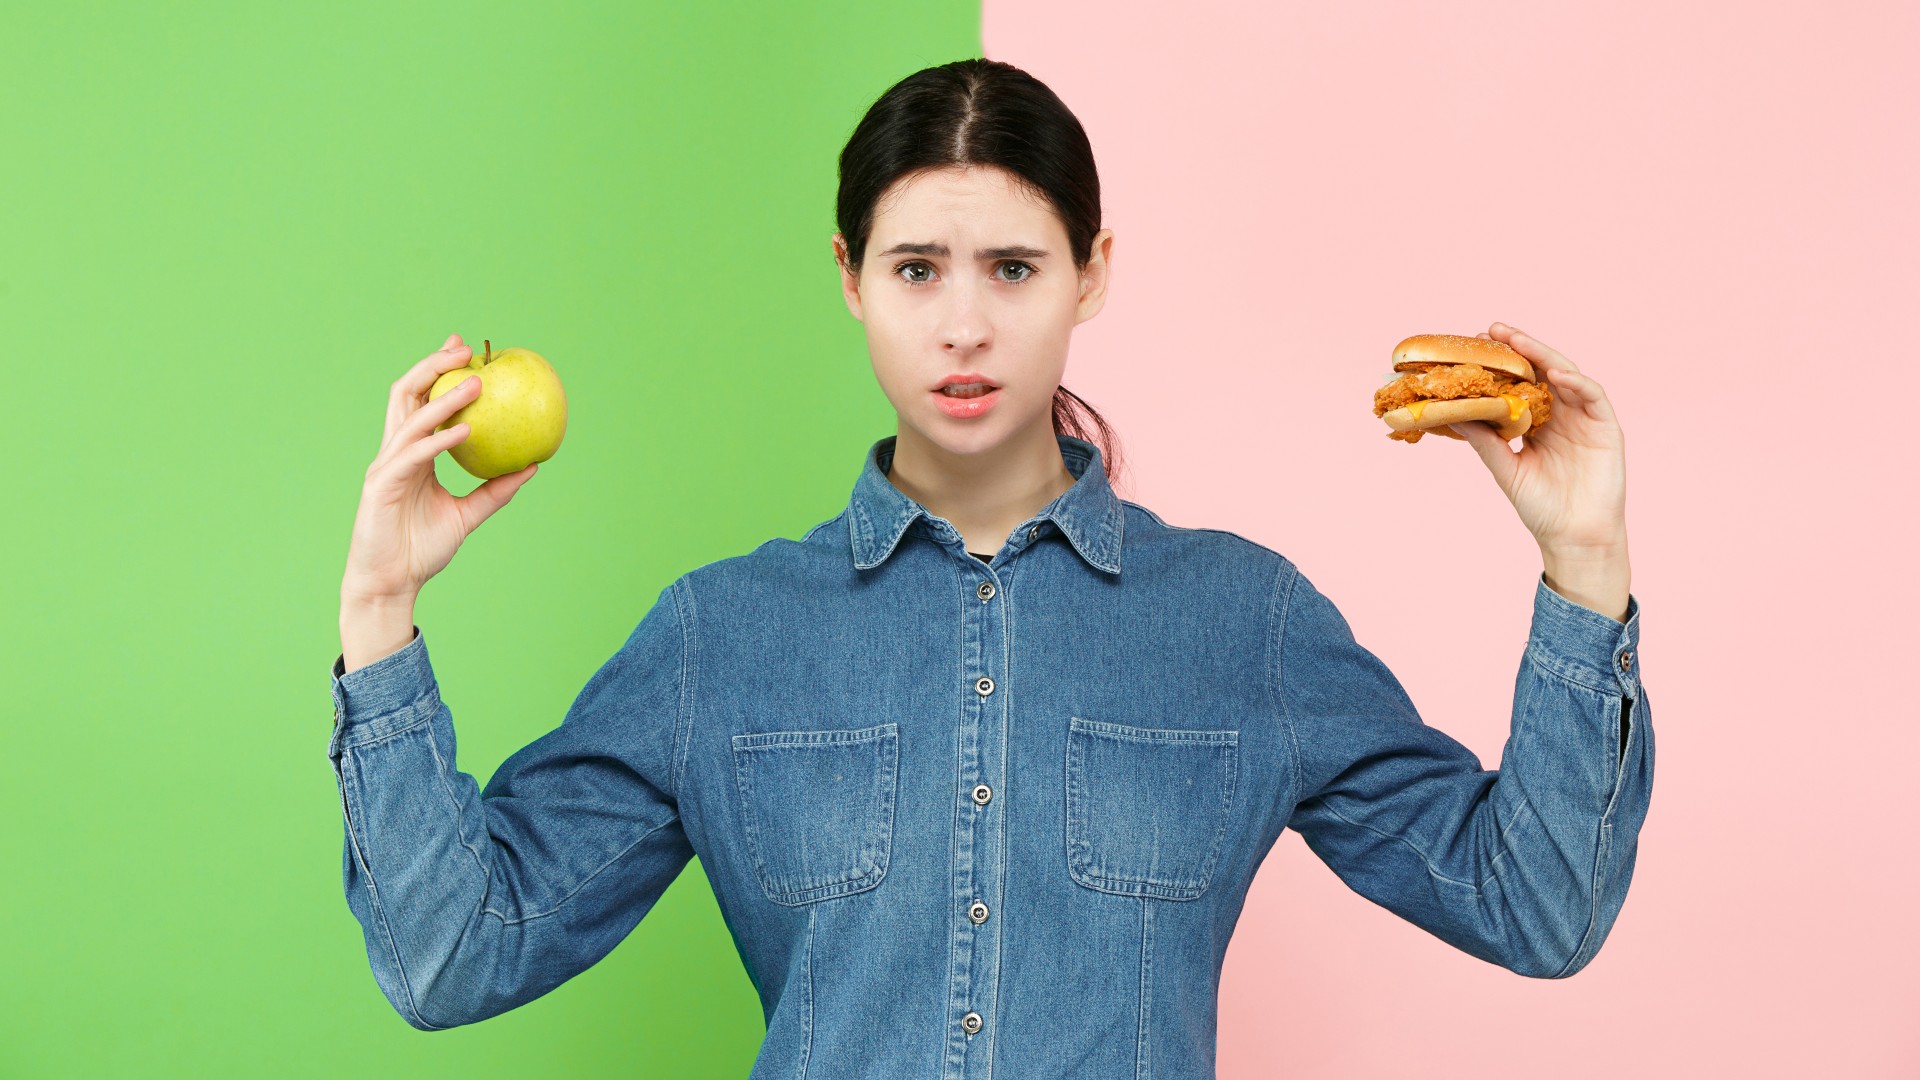 Foto de capa do artigo "Dieta para colesterol alto: veja o que comer e o que evitar"